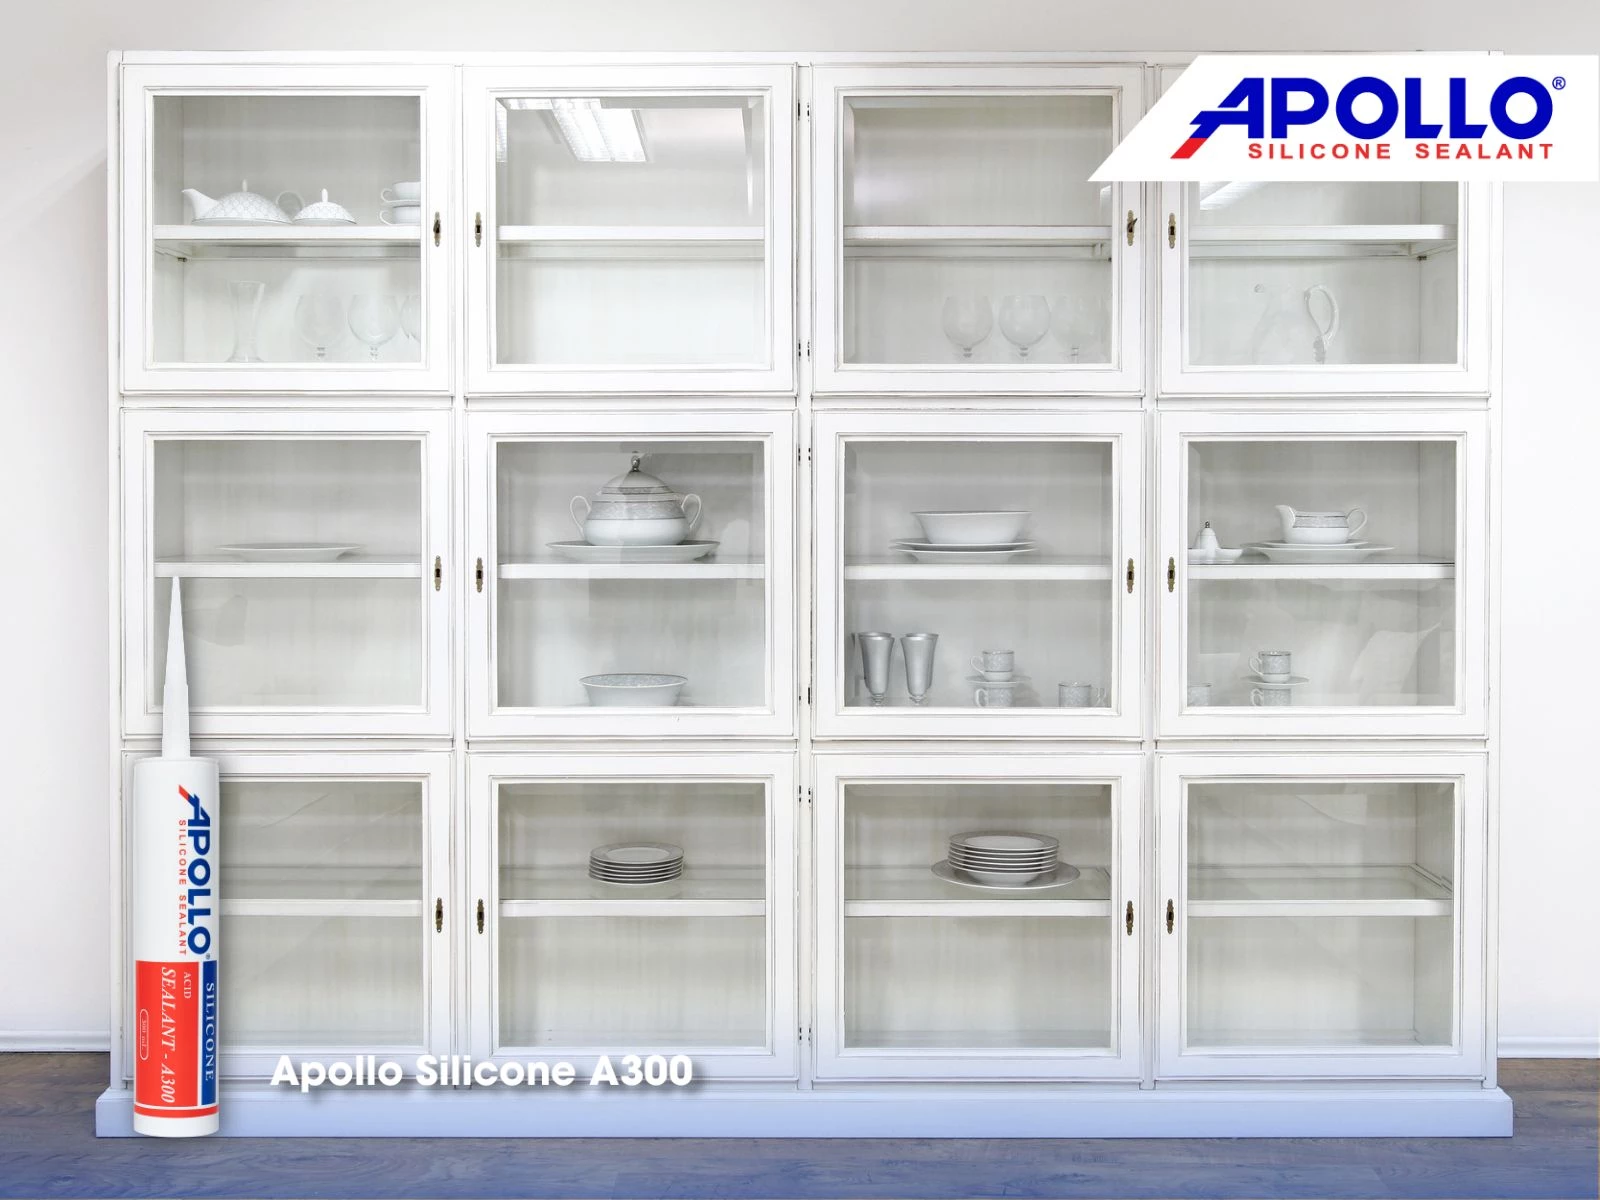 Apollo Silicone A300 - Giải pháp hoàn hảo trong việc dán tủ kính trưng bày